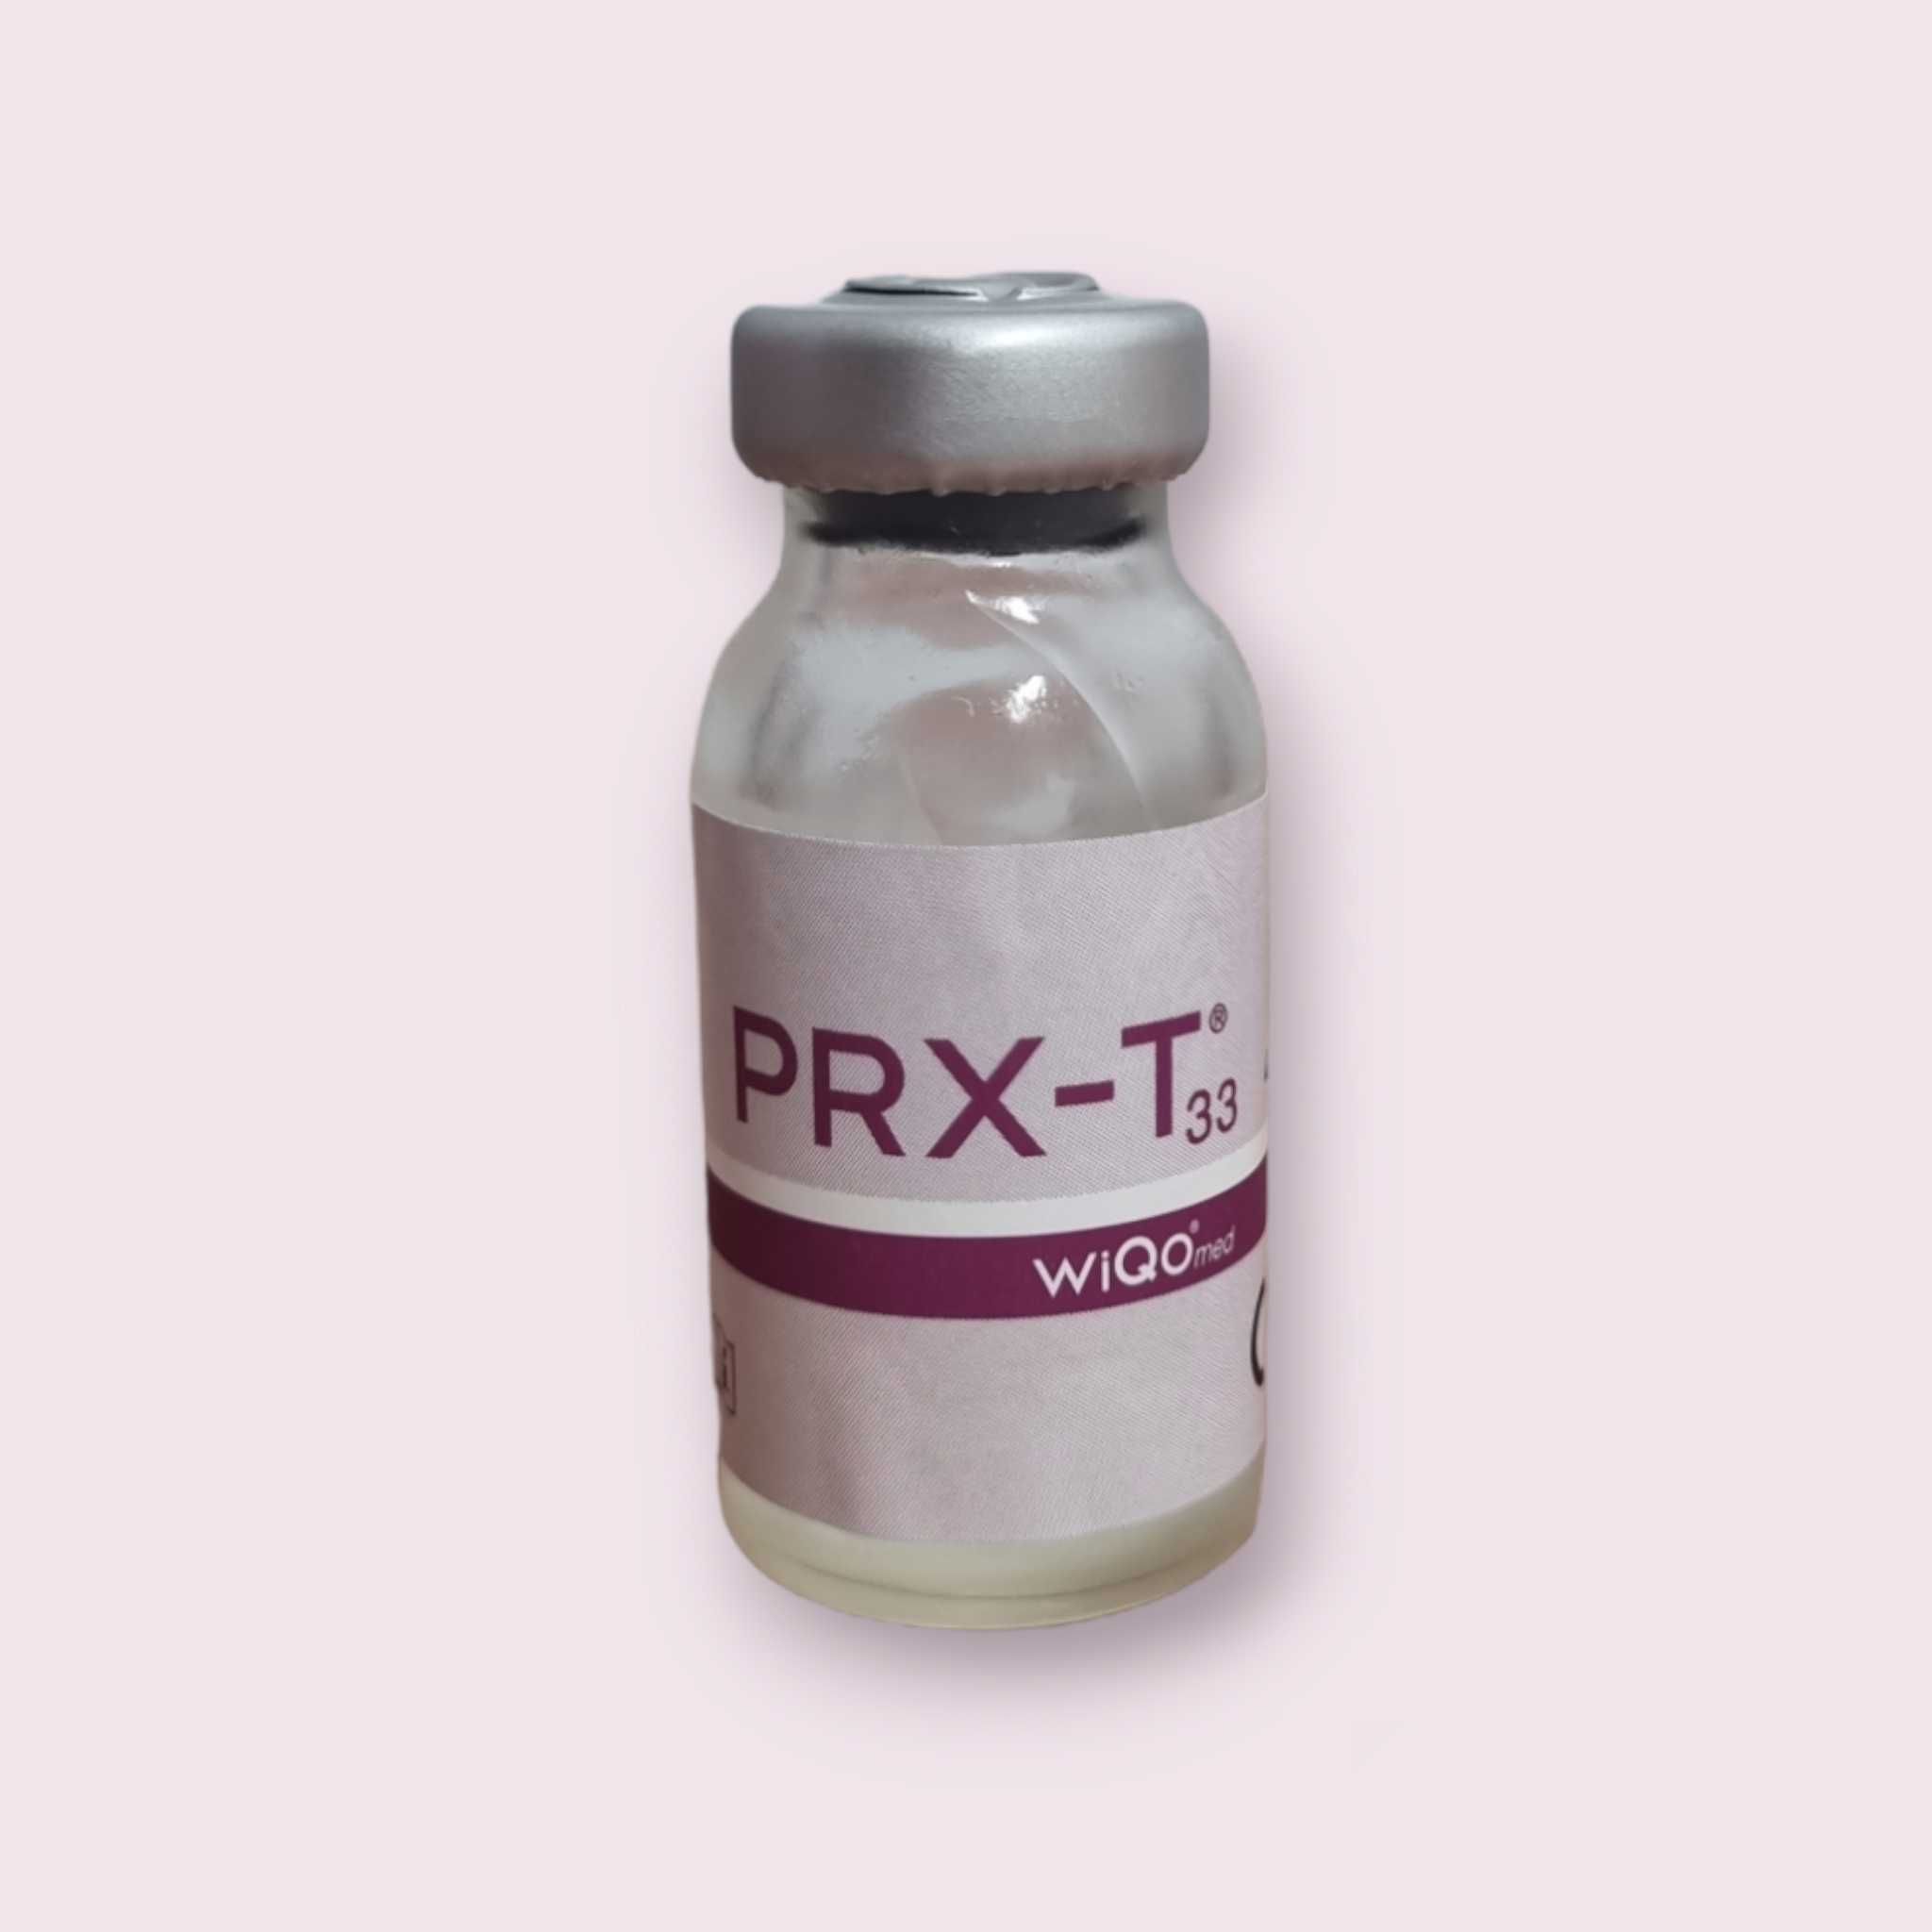 PRX-T33: Peeling Rejuvenare si Revitalizare (4Ml)